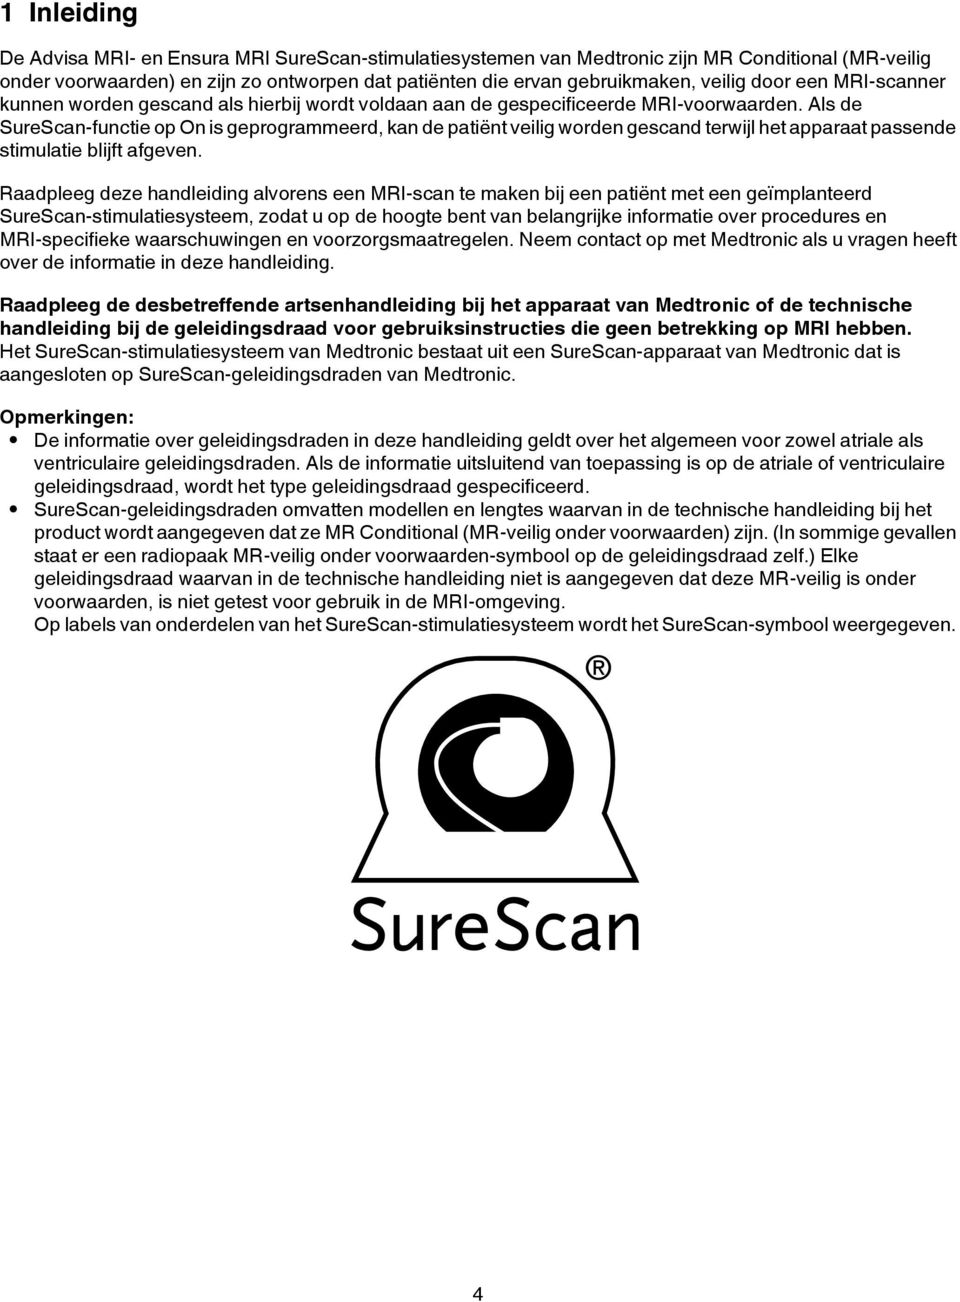 Als de SureScan-functie op On is geprogrammeerd, kan de patiënt veilig worden gescand terwijl het apparaat passende stimulatie blijft afgeven.